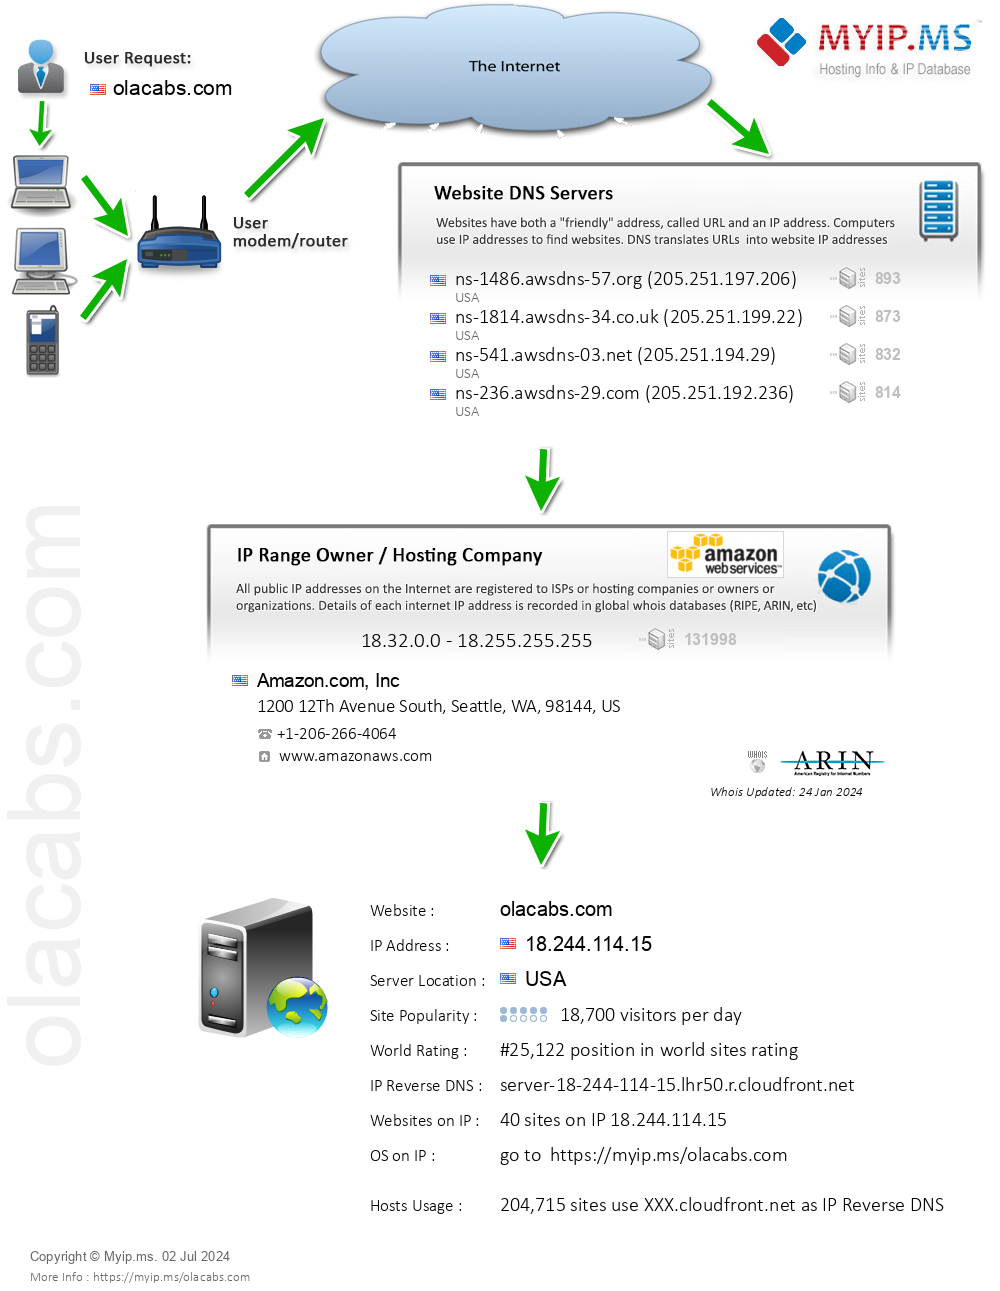 Olacabs.com - Website Hosting Visual IP Diagram